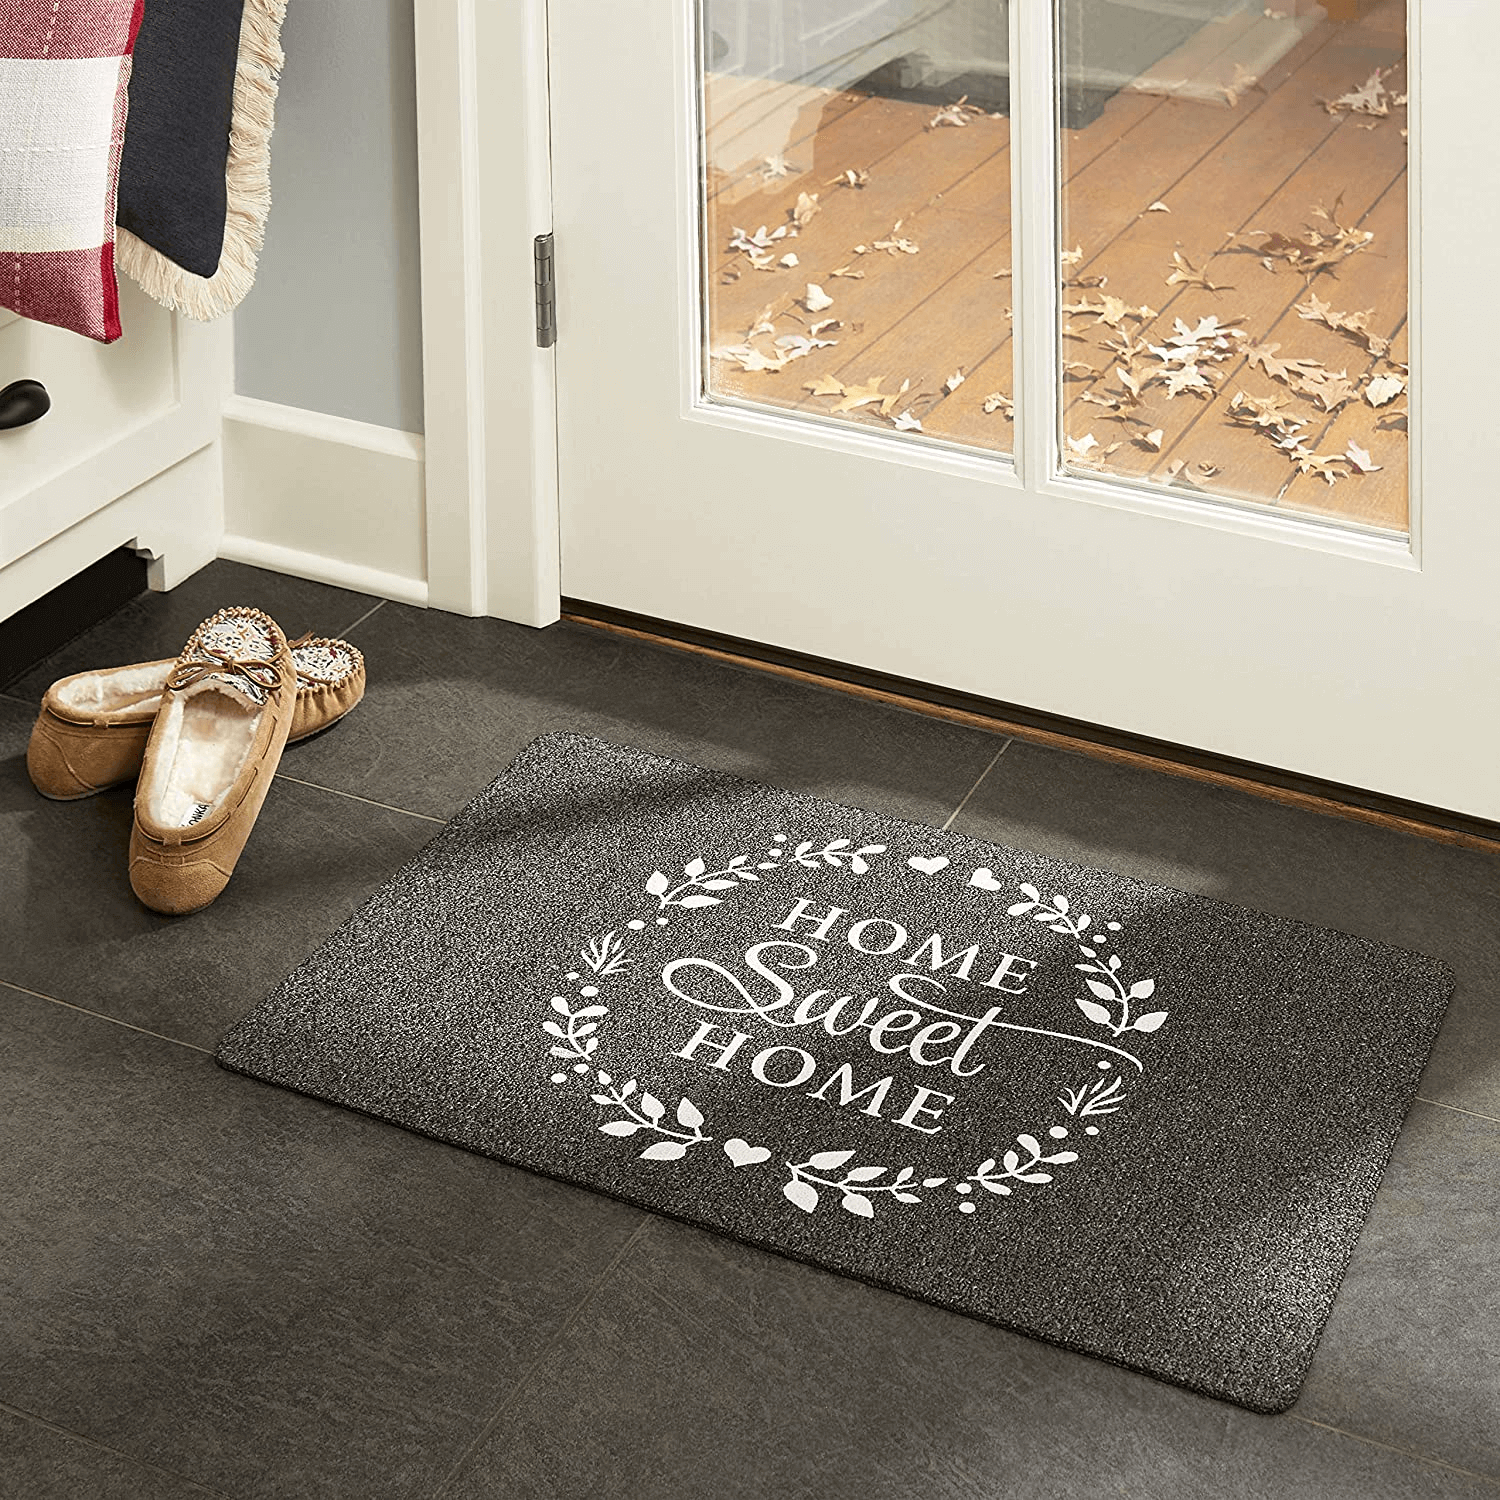 Home Sweet Home Outdoor Rubber Doormat 